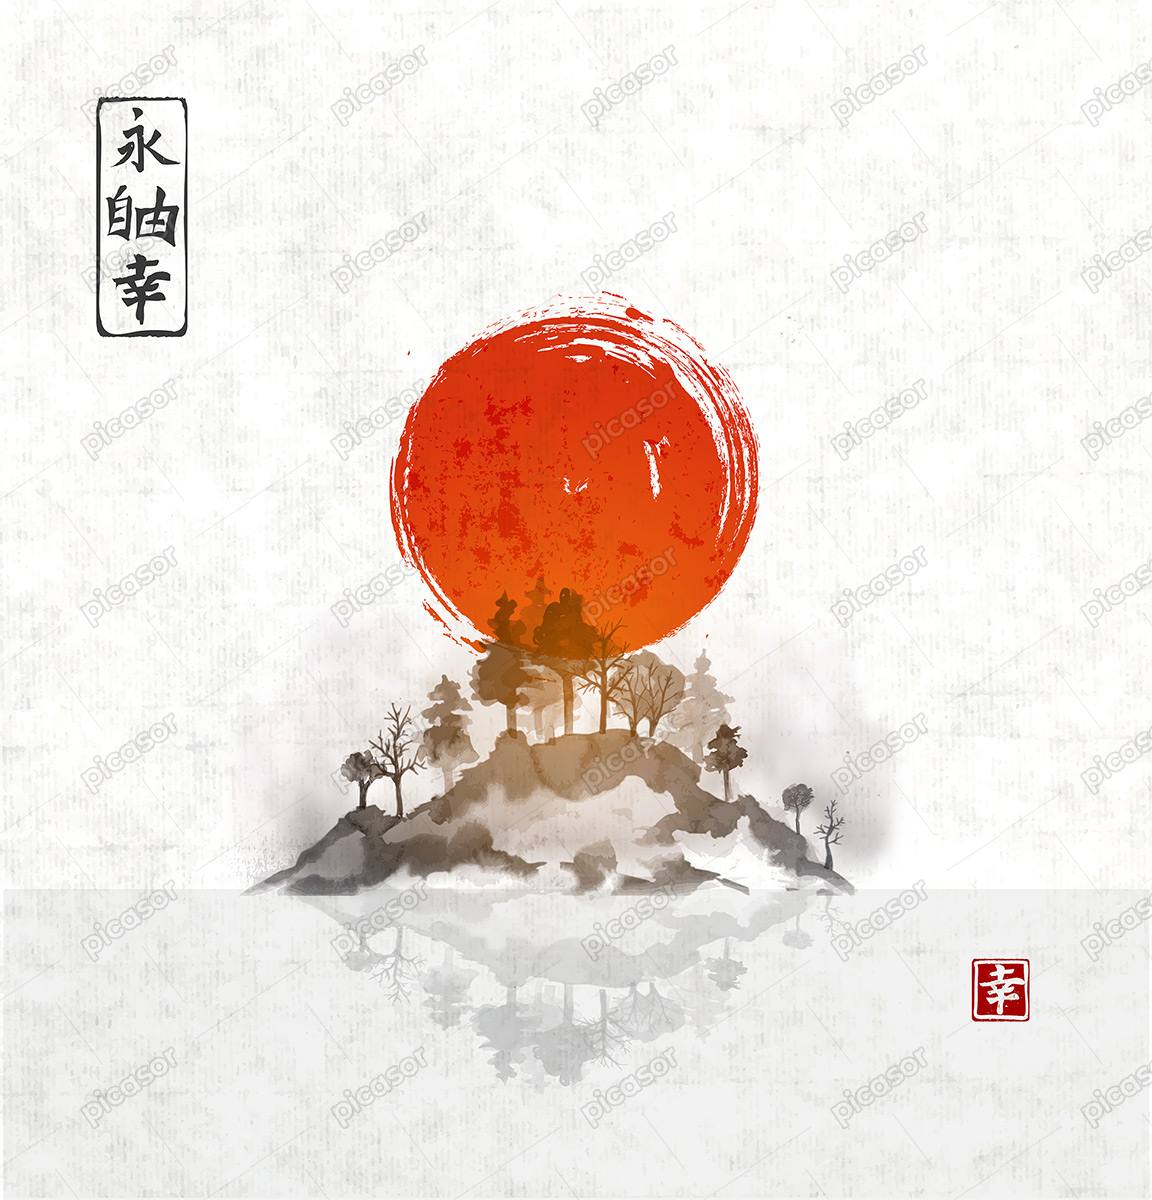 وکتور نقاشی کوه و جنگلهای ژاپن  و خورشید سرخ در پس زمینه،هنر نقاشی ژاپنی